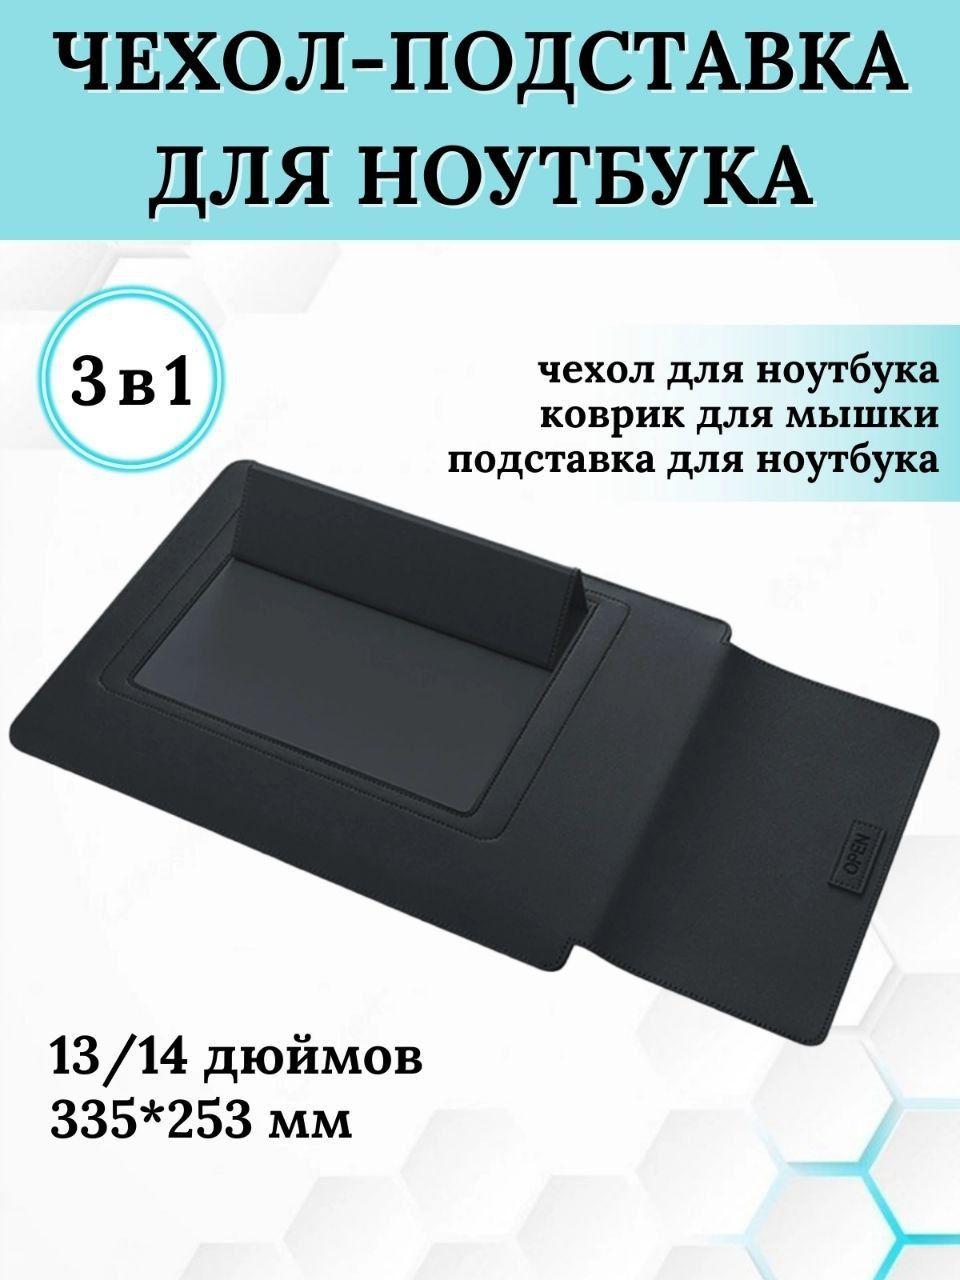 Чехол и подставка для ноутбука/Сумка-столик/Сумка для ноутбука